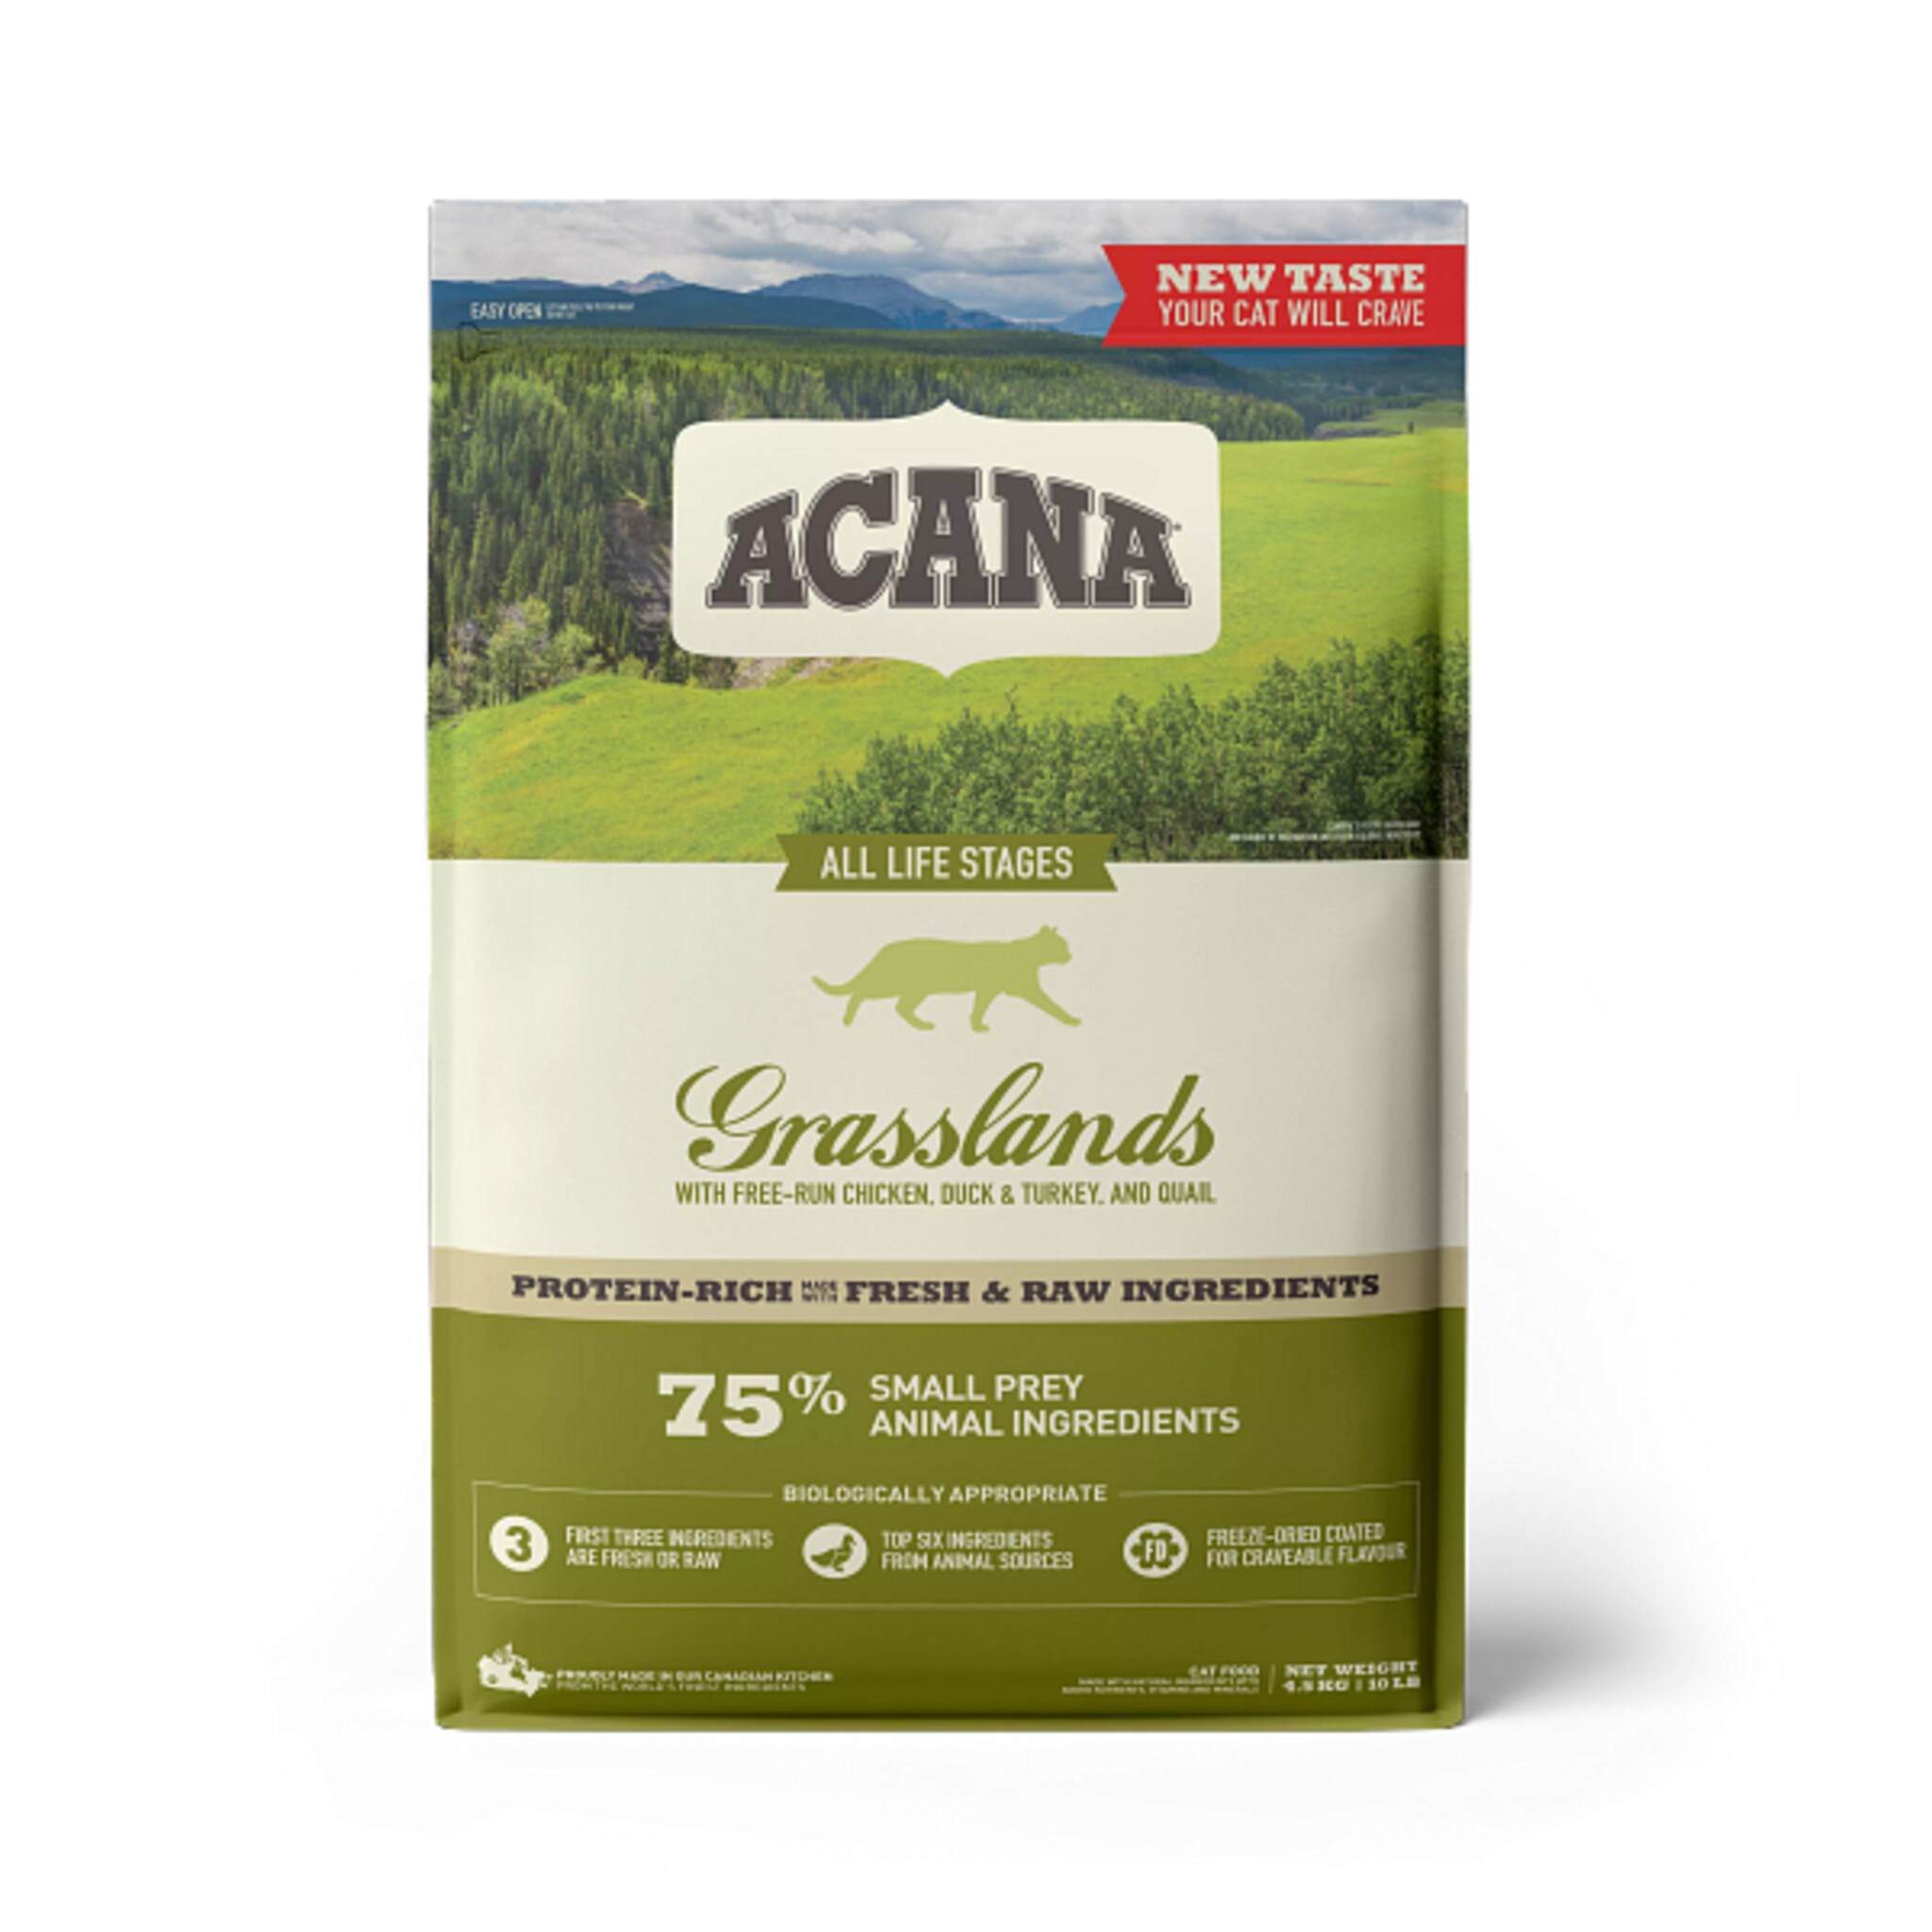 A bag of Acana cat food, Grasslands recipe, 10 lb. 